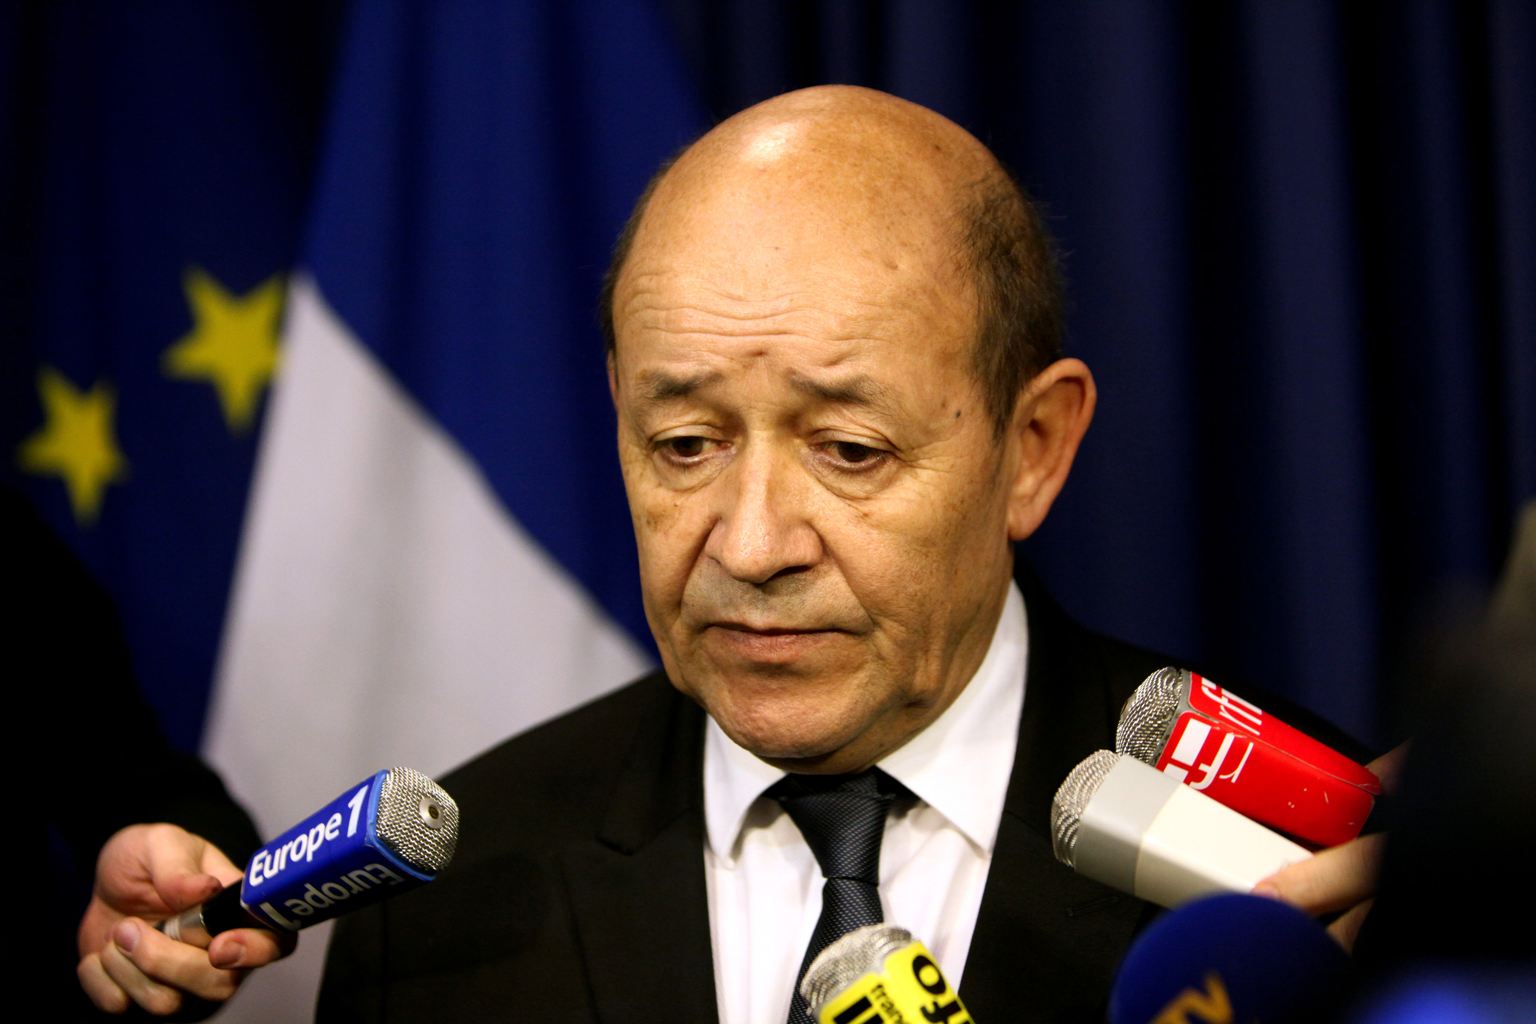   وزير الدفاع الفرنسي يدعو لوقف الغارات الجوية على سوريا وفتح ممرات إنسانية